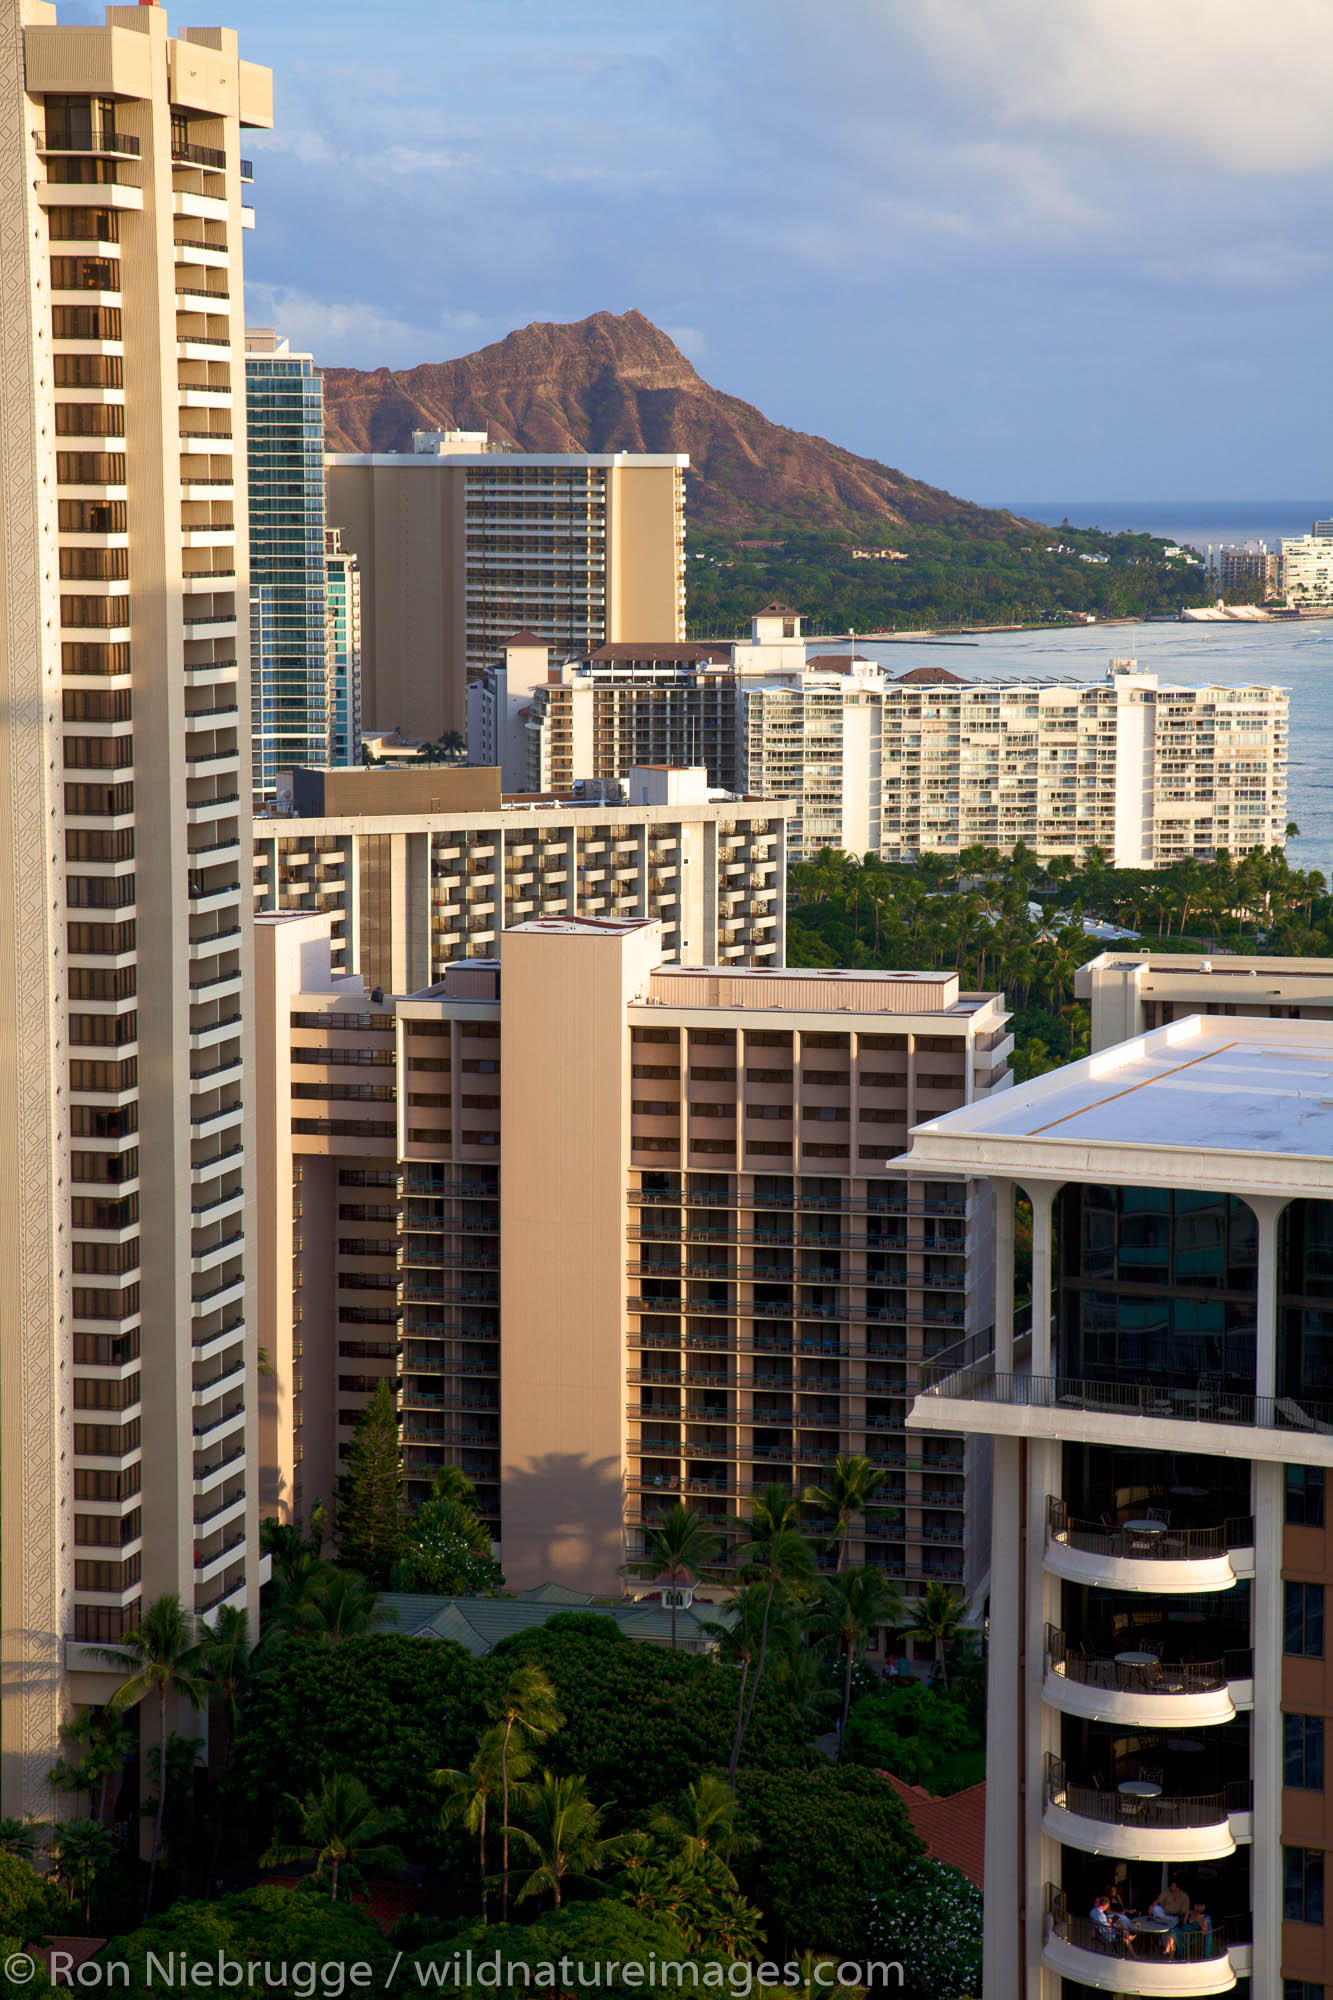 Hotels along Waikiki Beach, Honolulu, Hawaii.